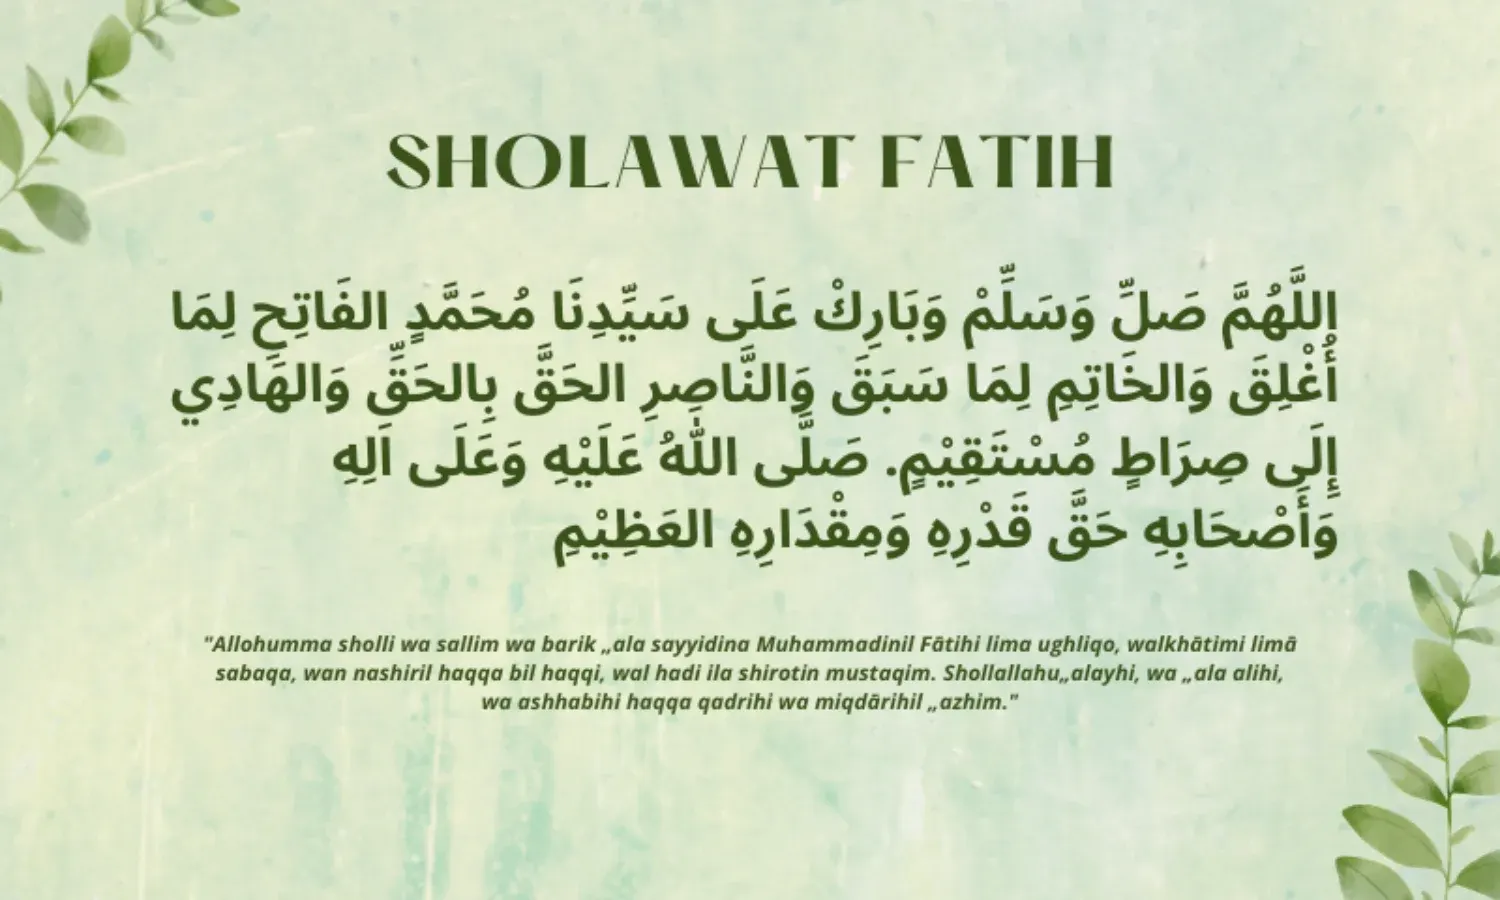 Sholawat Fatih asli, beserta bahasa arab, latin, makna, waktu amalan dan keutamaannya